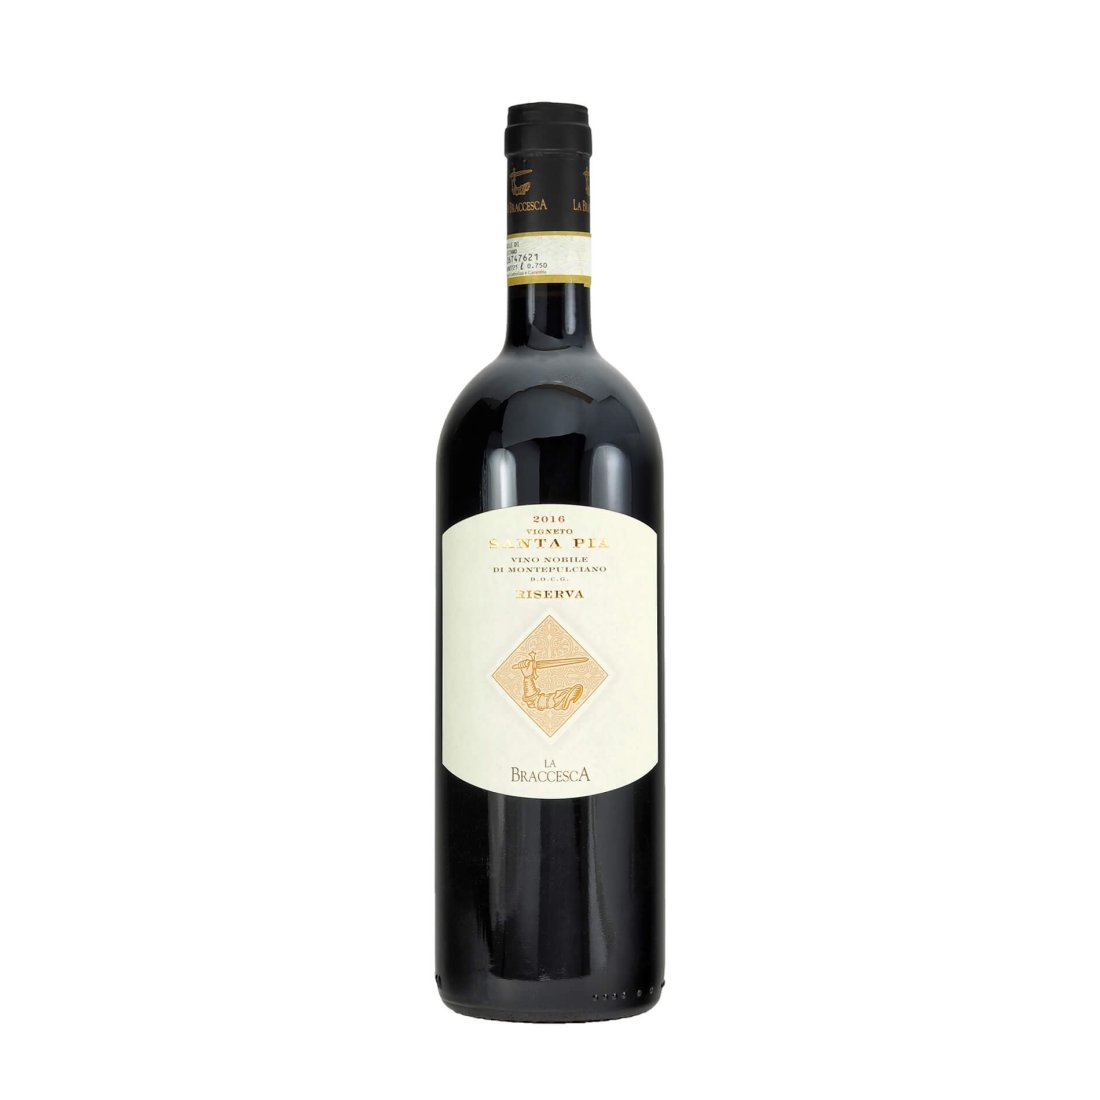 "Santa Pia“ Vino Nobile di Montepulciano DOCG Riserva 2016 LA BRACCESCA